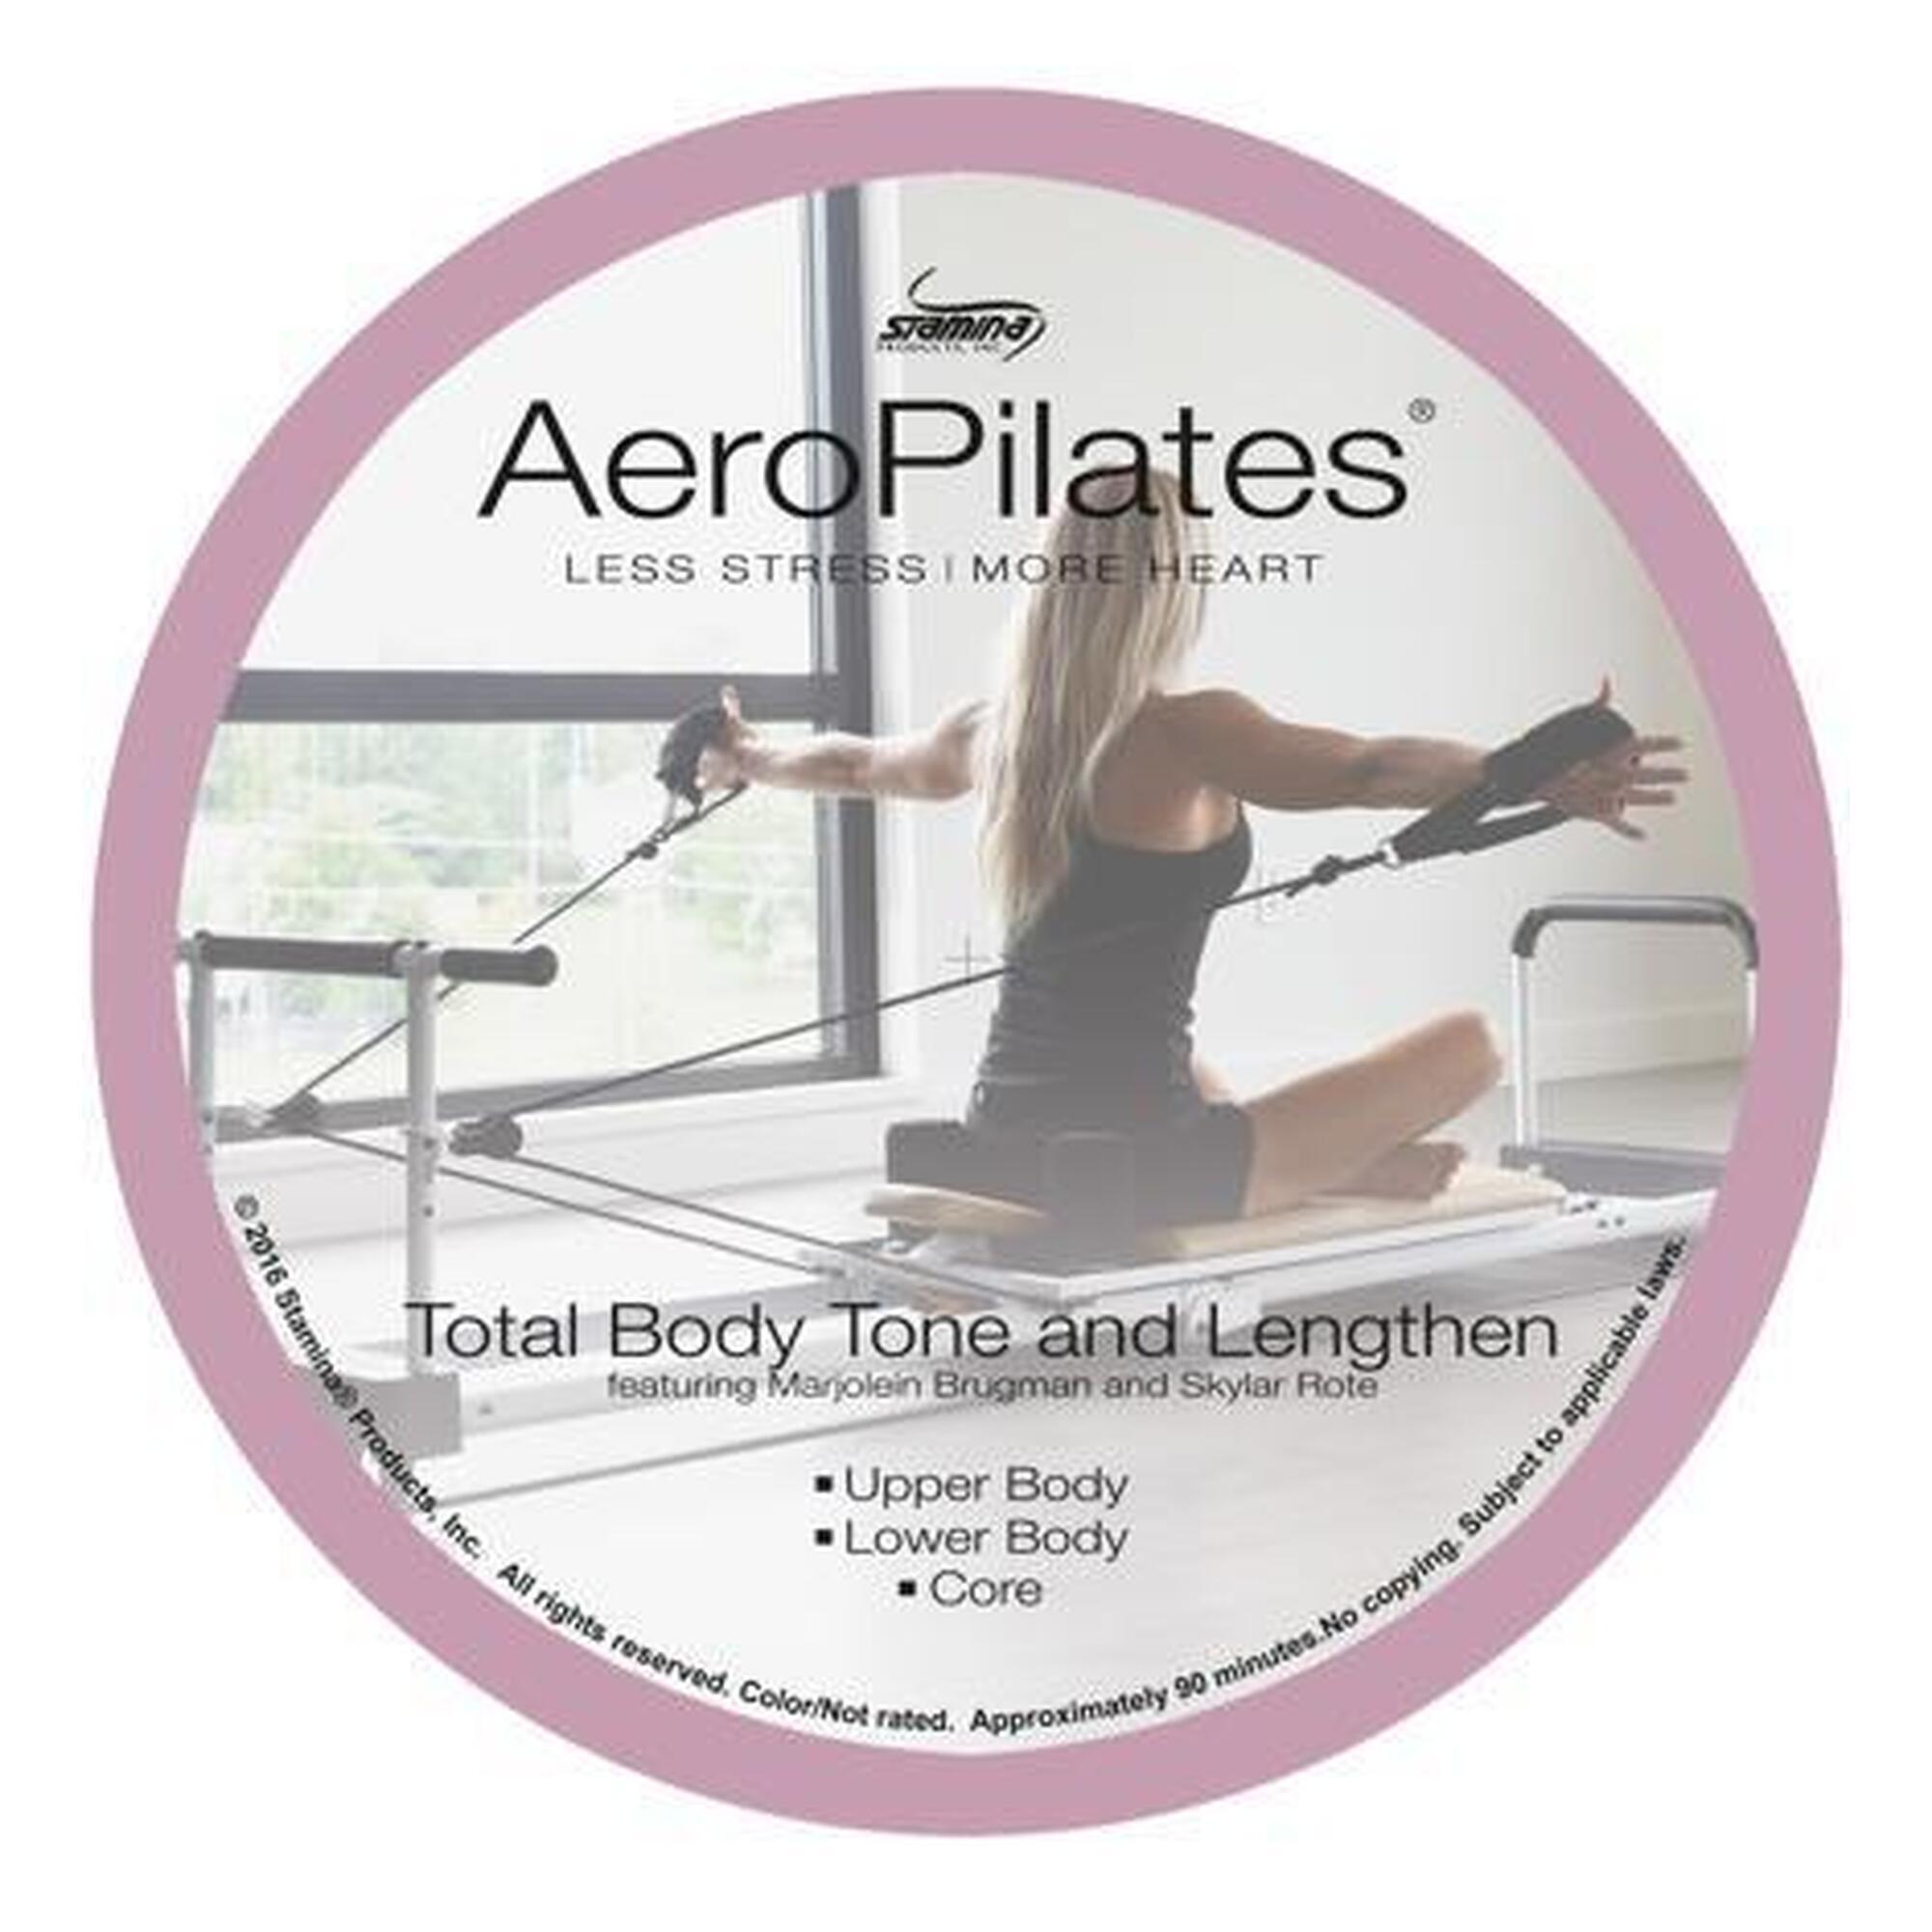 AEROPILATES AeroPilates Pilates Total Body , Tone and Lengthen workout DVD - New Series